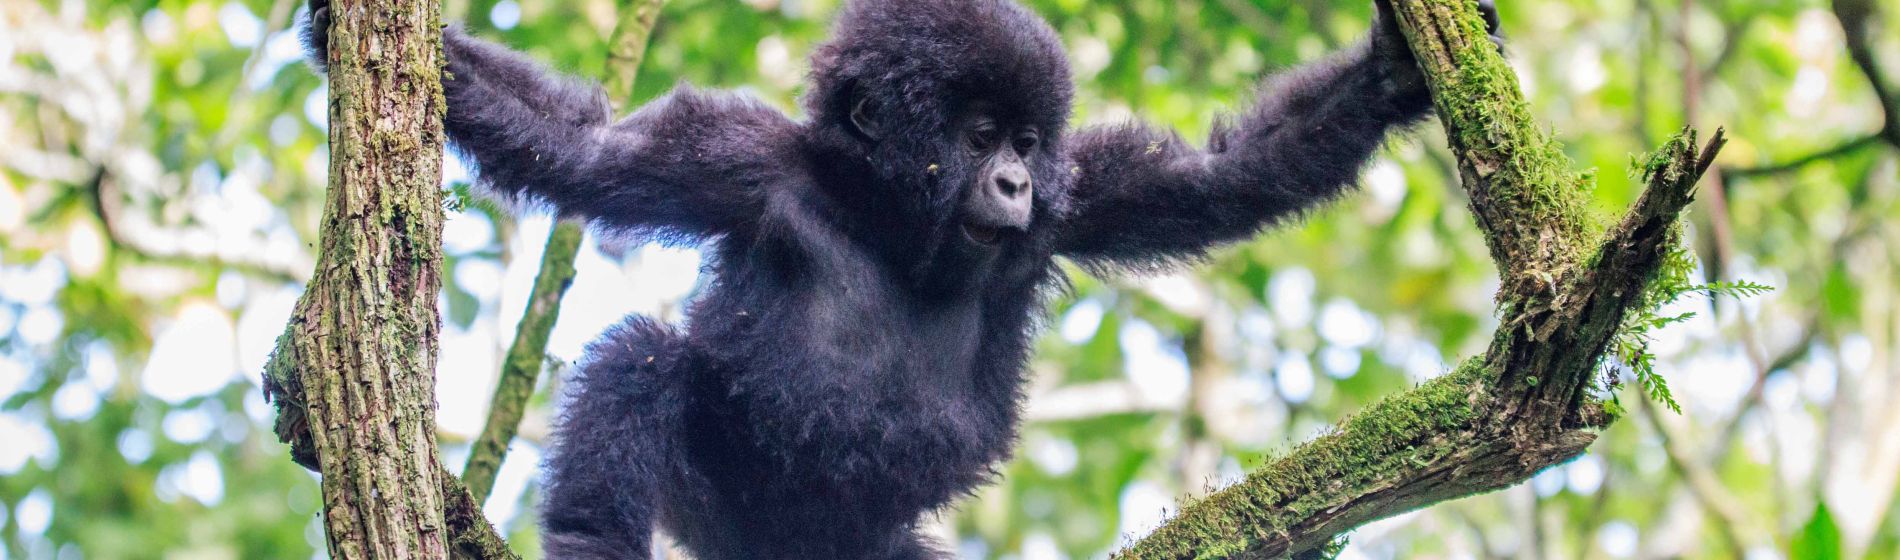 gorilla_baby_uganda.jpg